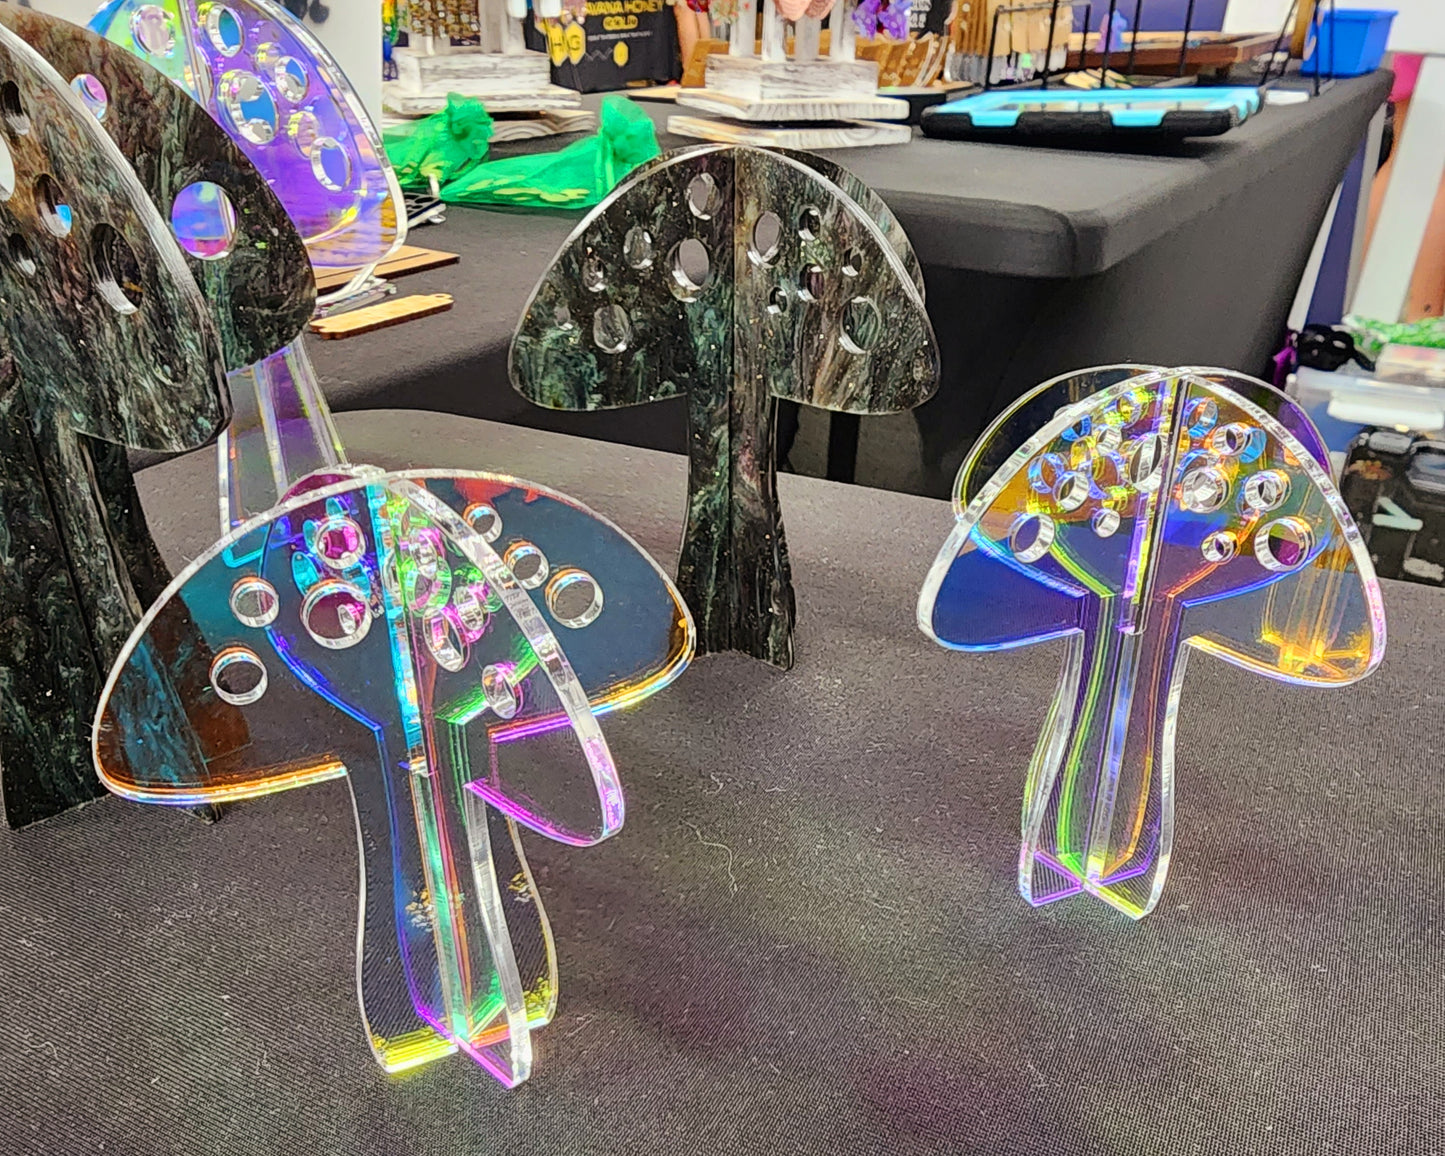 3D Mushrooms